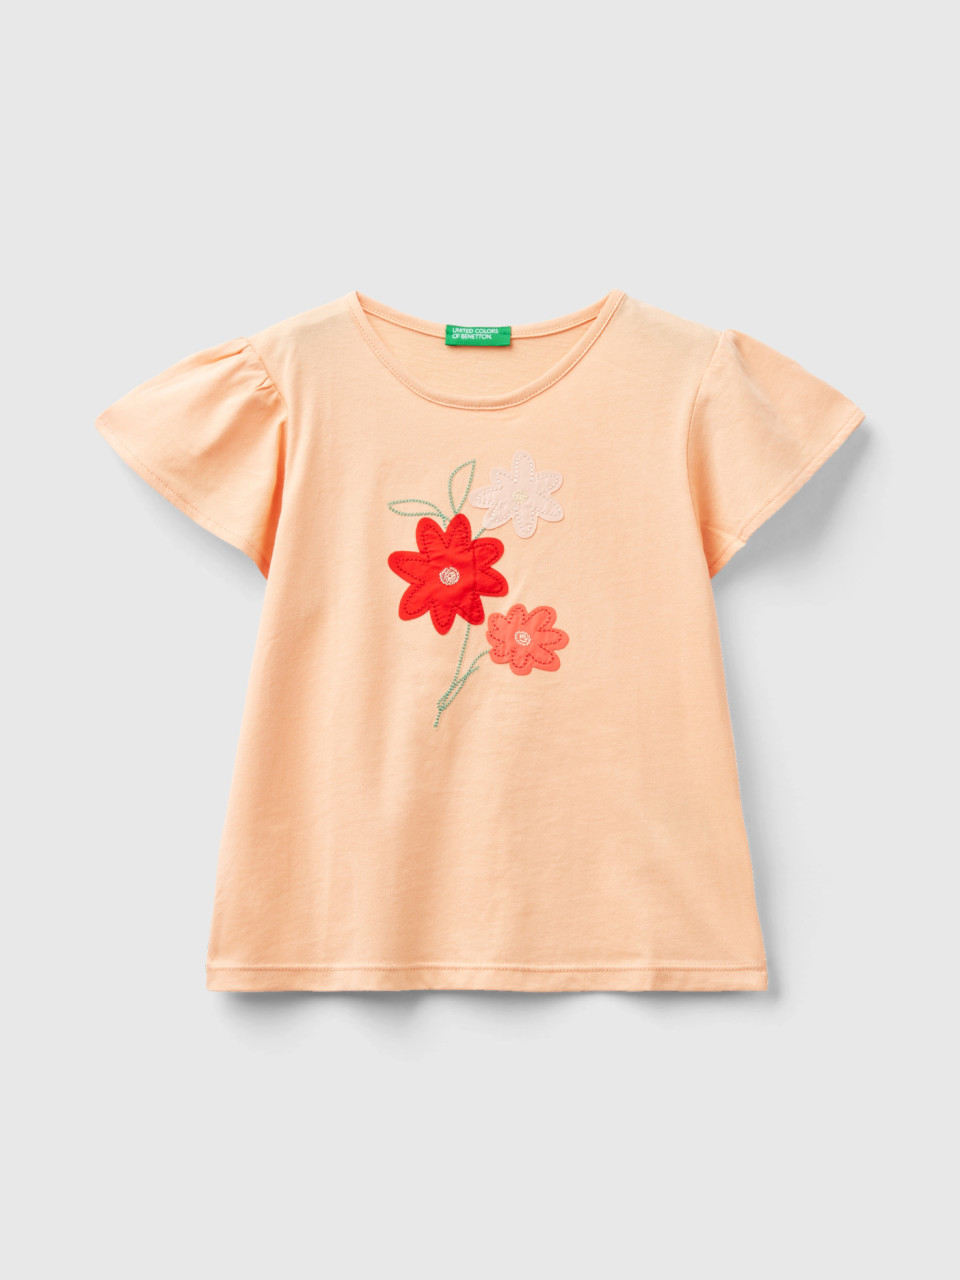 Benetton, Camiseta Con Bordado Floral, Salmón, Niños